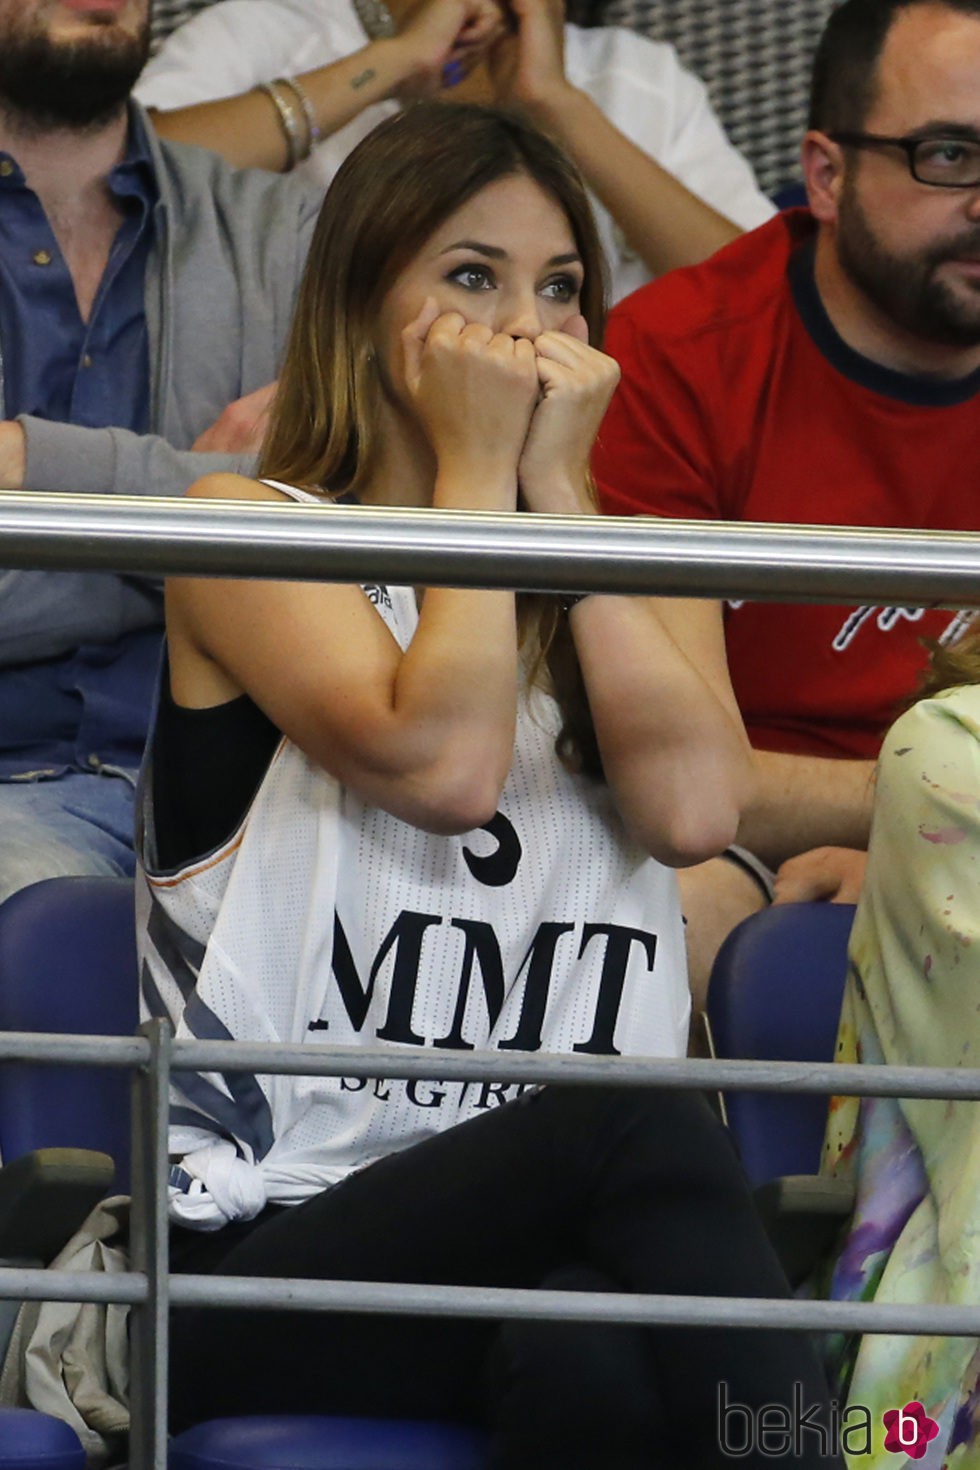 Helen Lindes en tensión durante la final de la Euroliga 2015